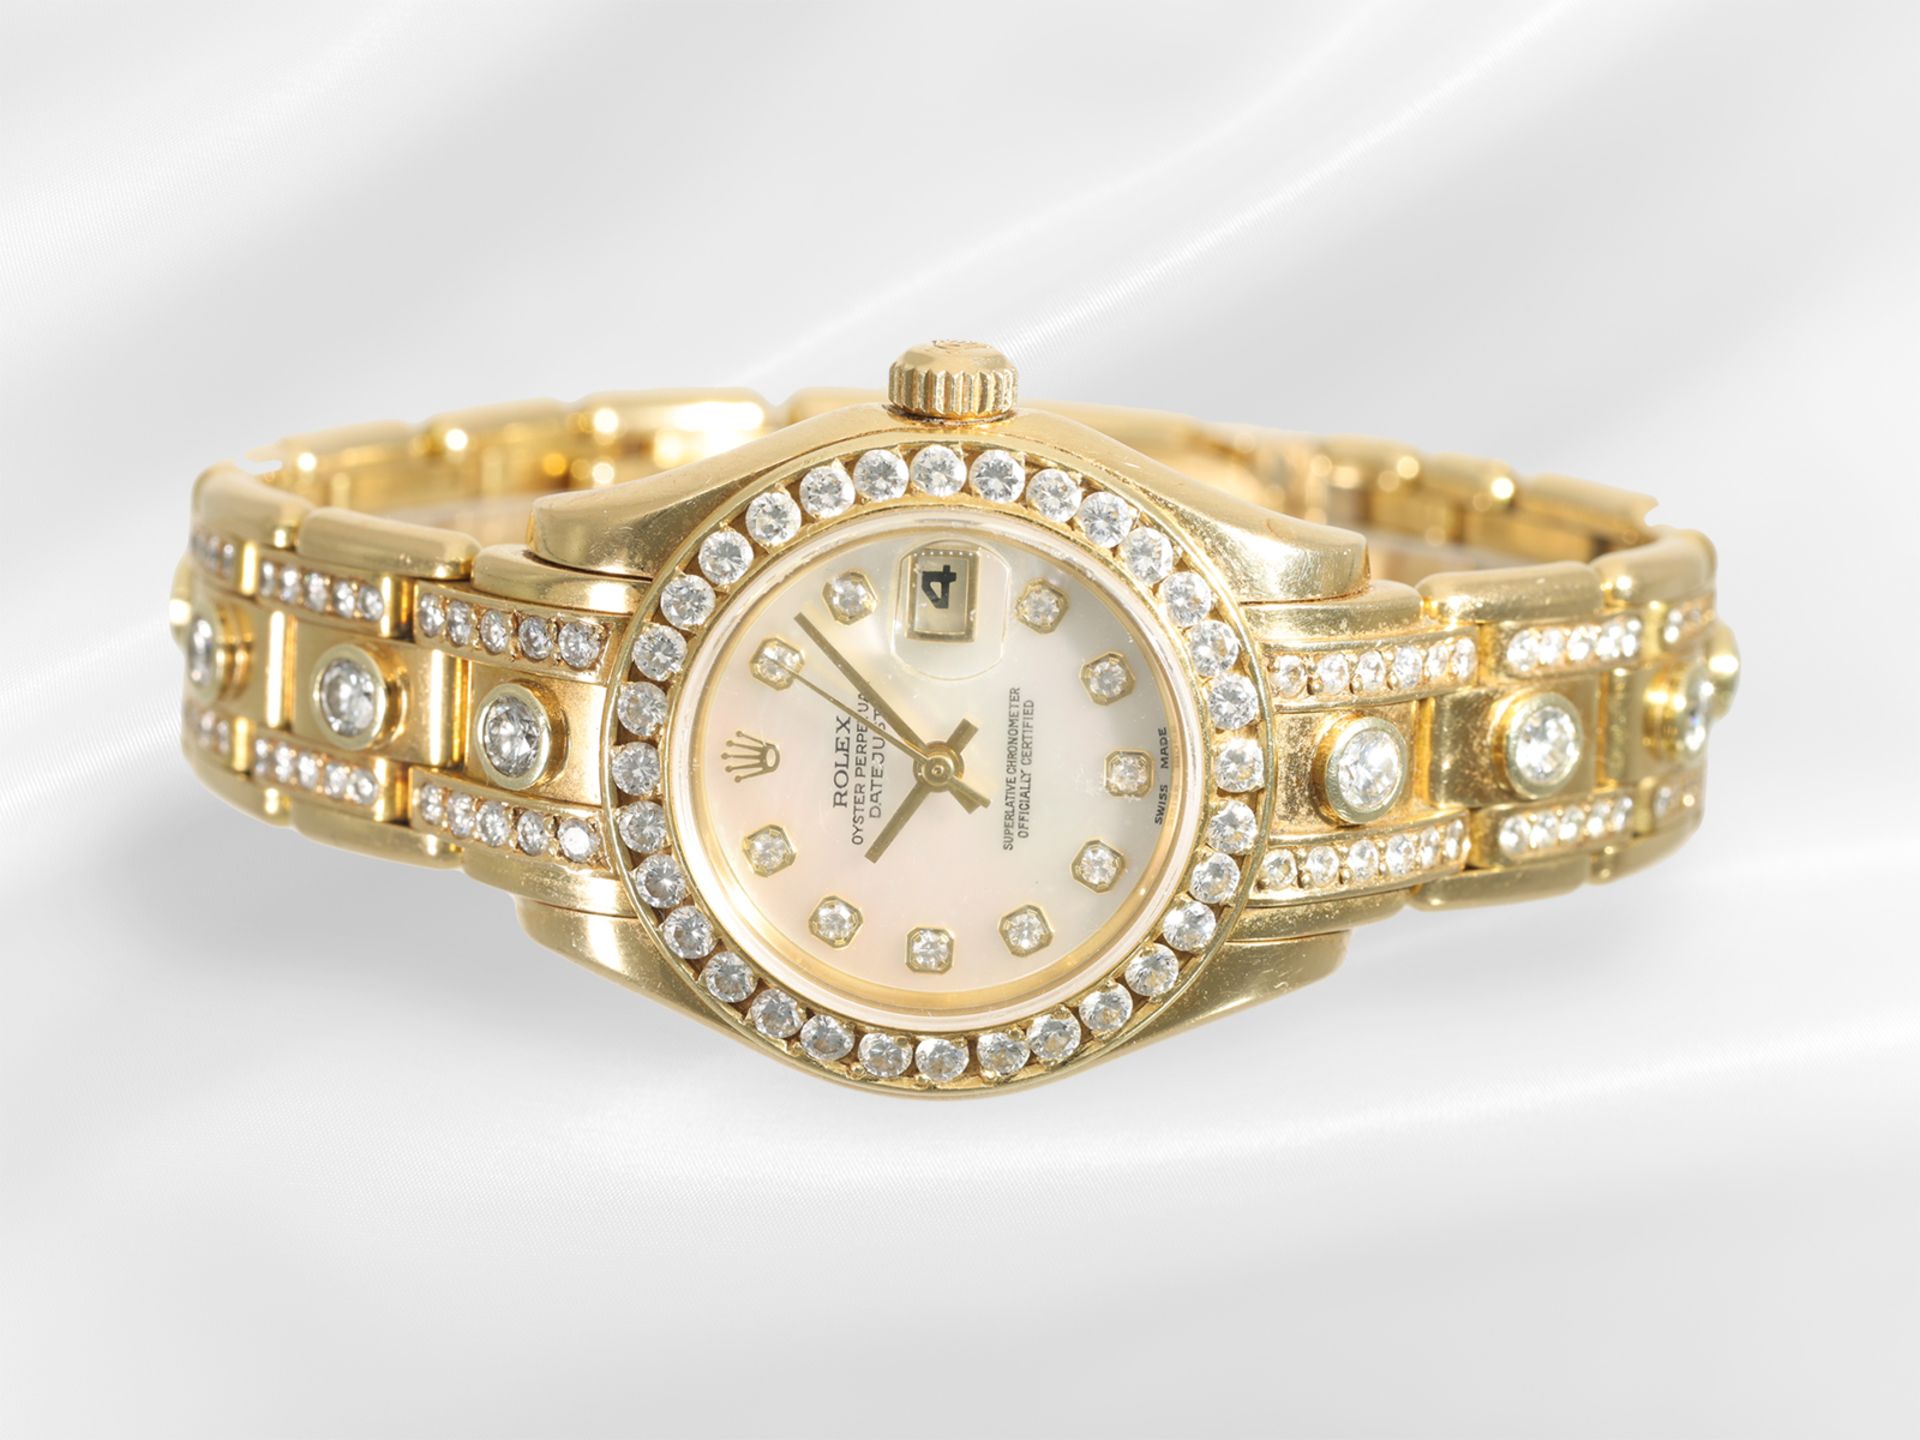 Armbanduhr: gesuchte luxuriöse Damenuhr Rolex Pearlmaster 29 mit Brillantbesatz und Diamantzifferbla - Bild 2 aus 6